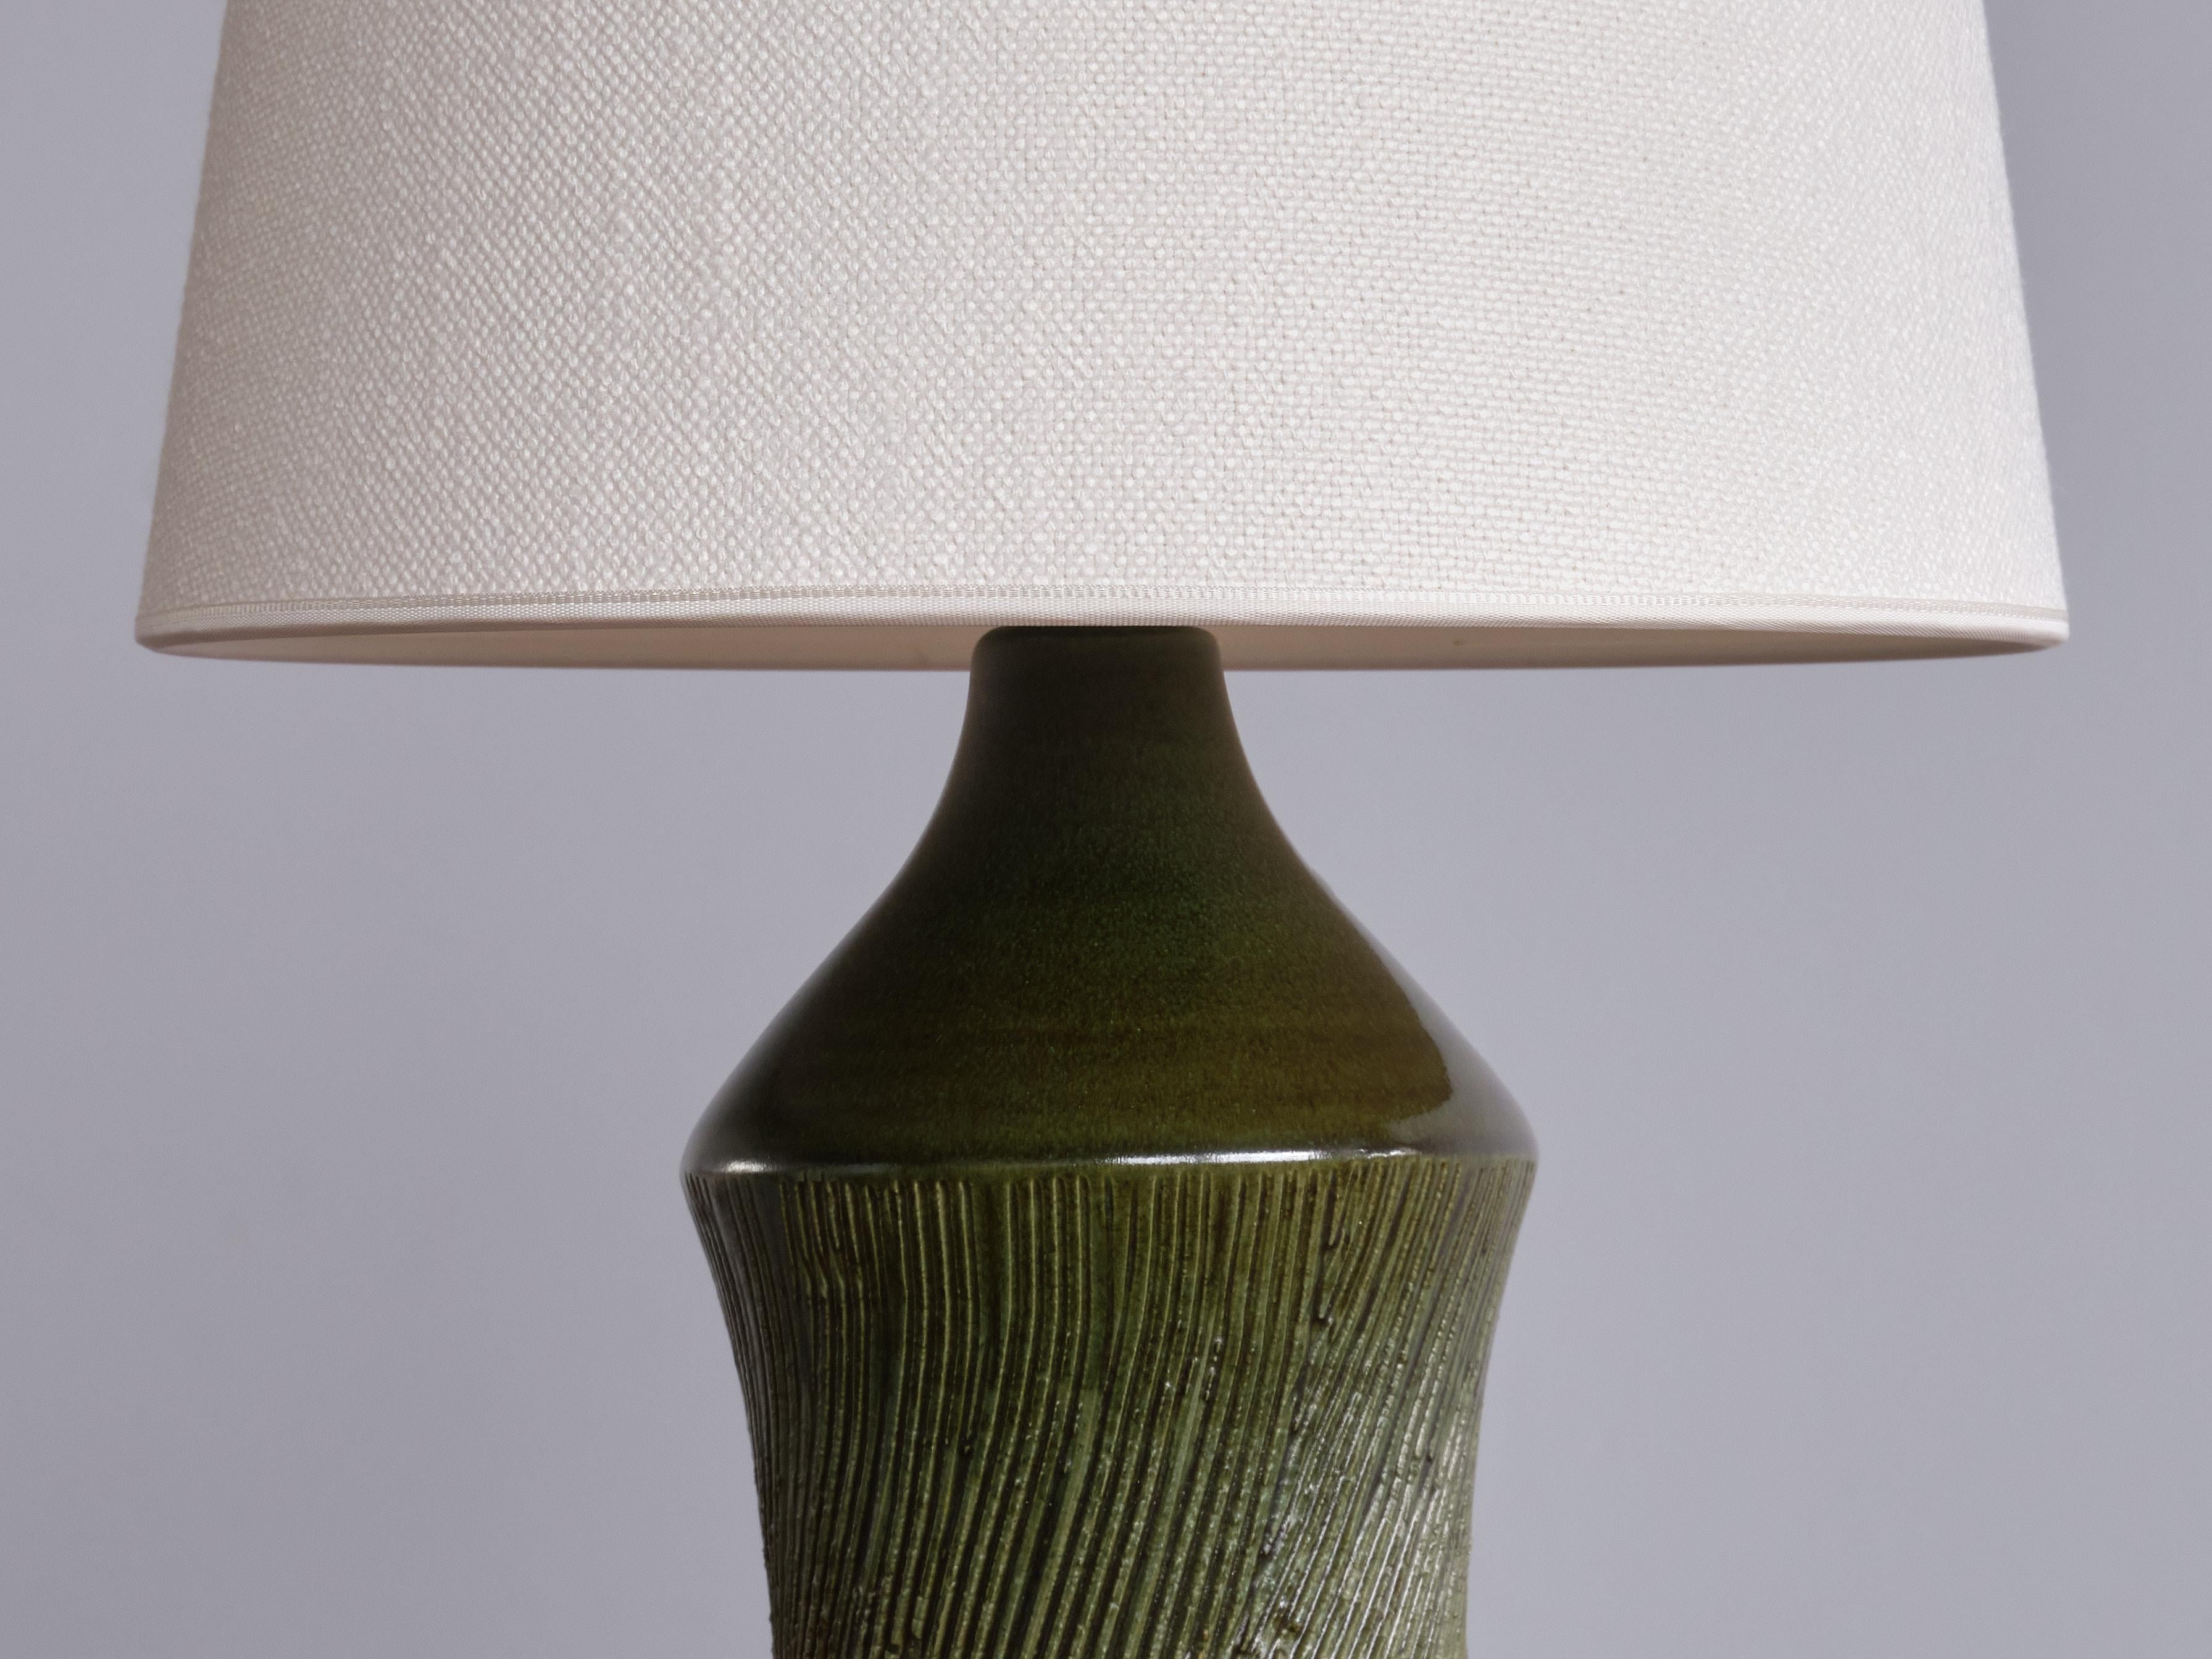 Henry Brandi Green Ceramic Table Lamp, Brandi Vejbystrand, Sweden, 1960s For Sale 1